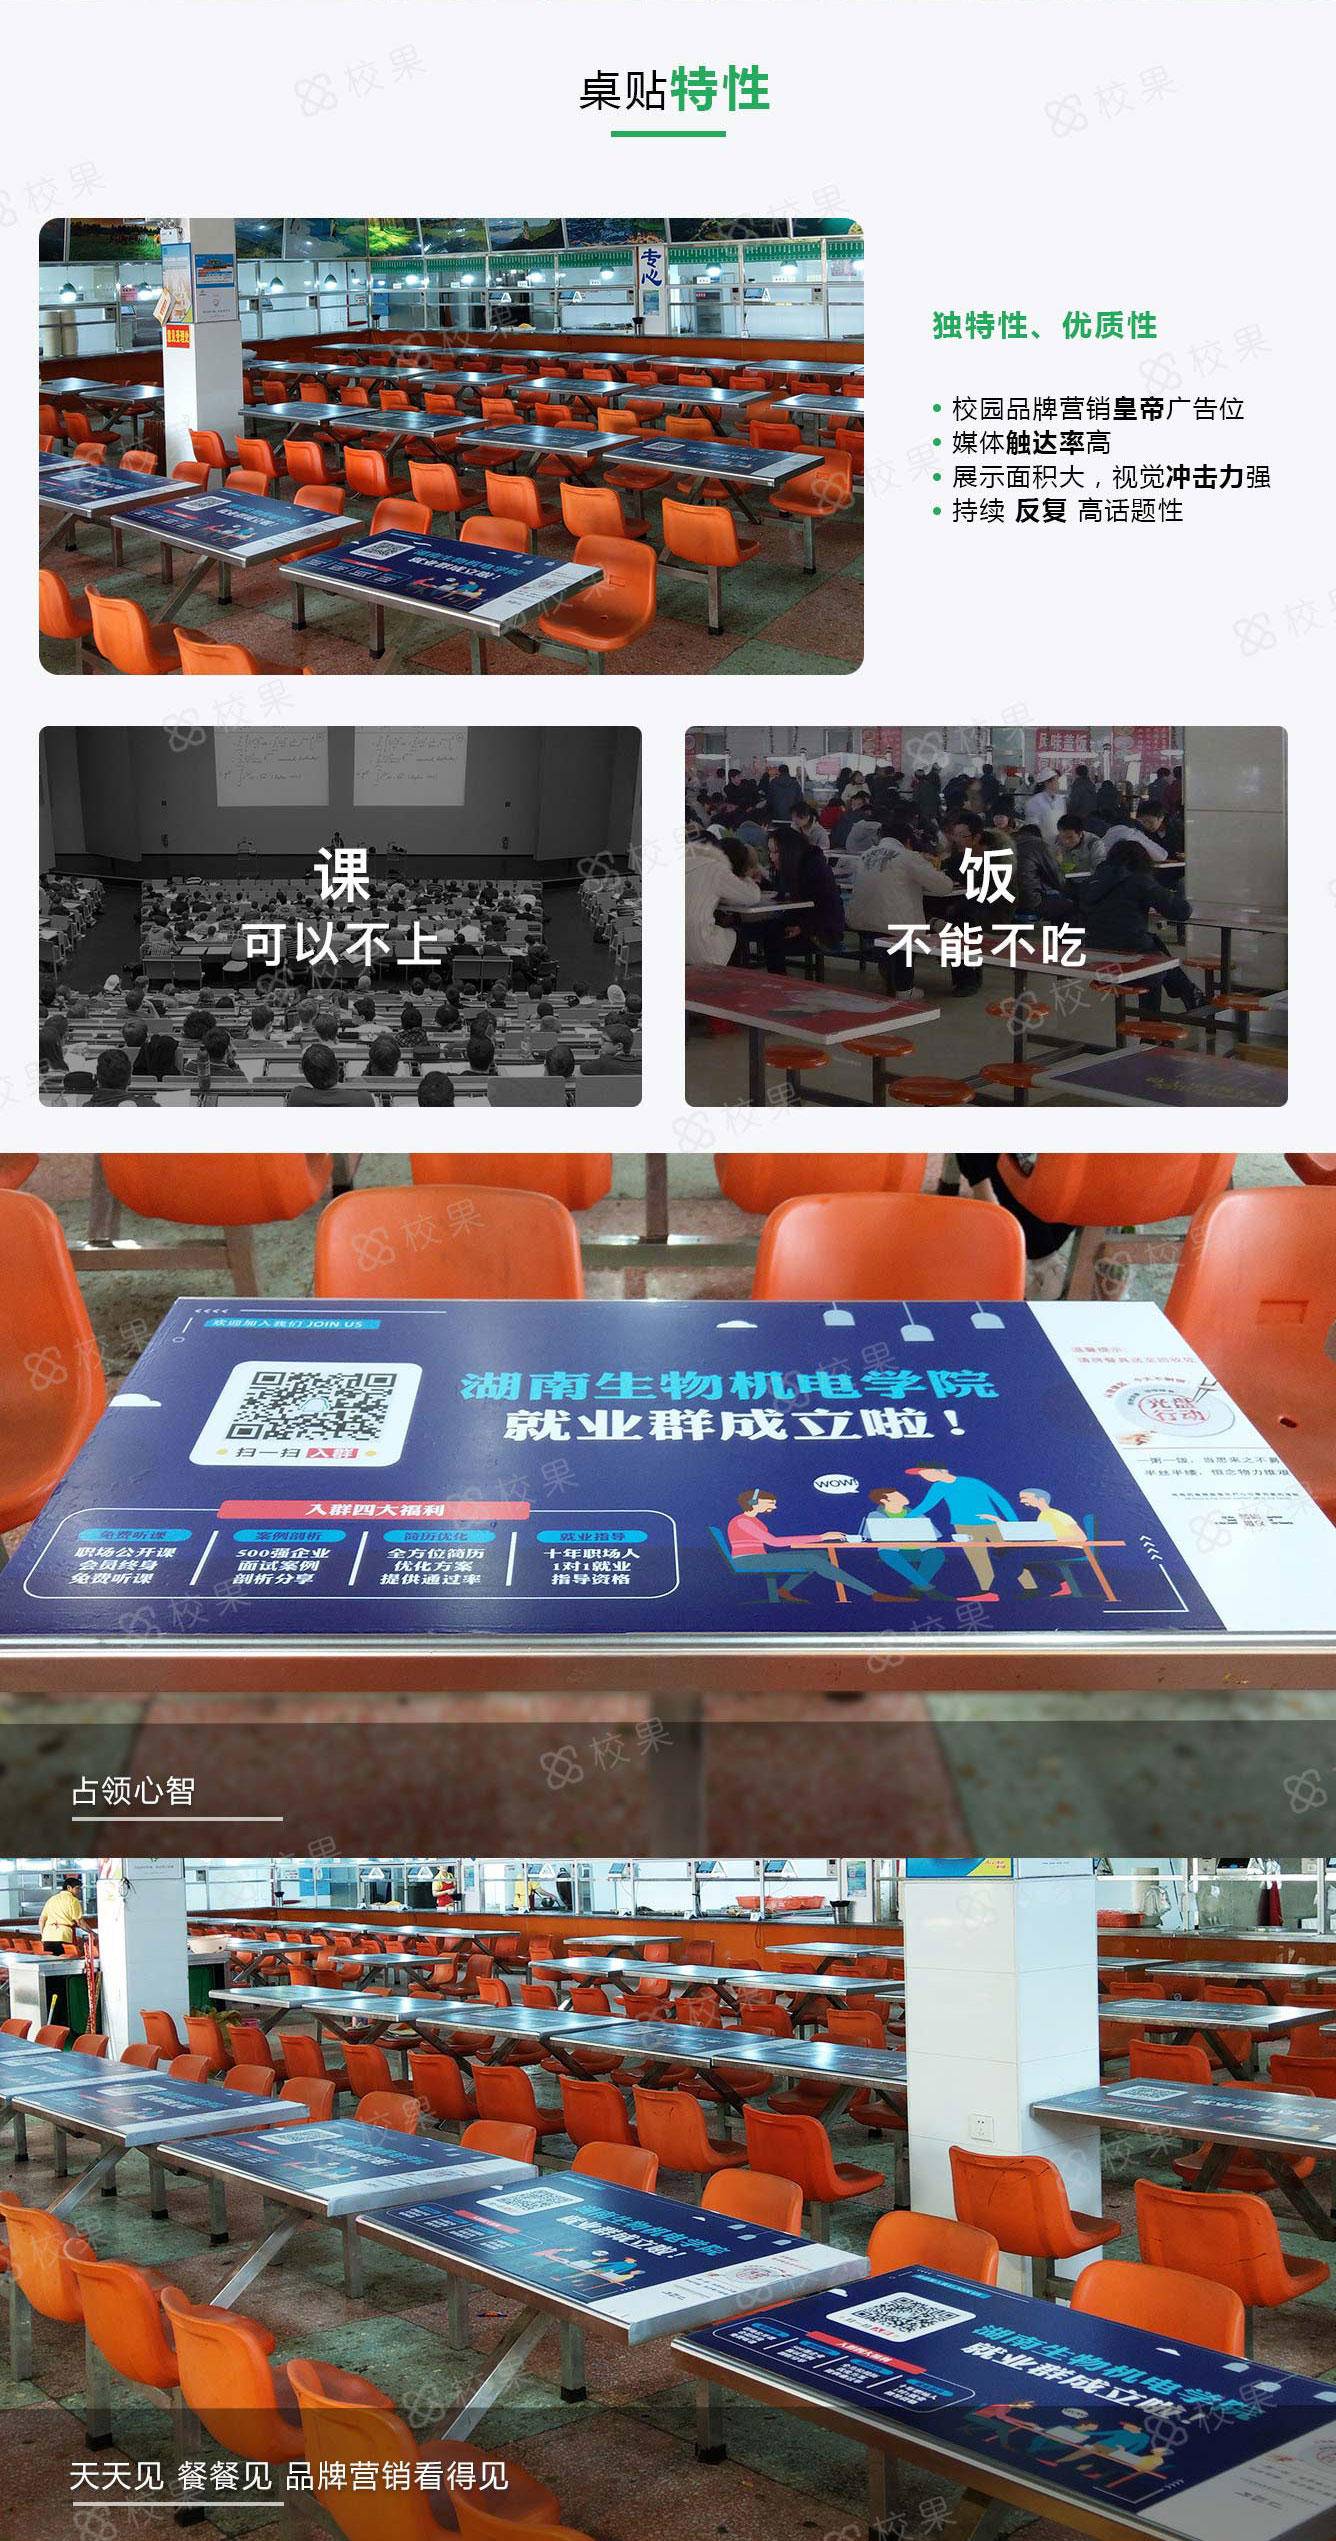 上海高校桌贴广告特征